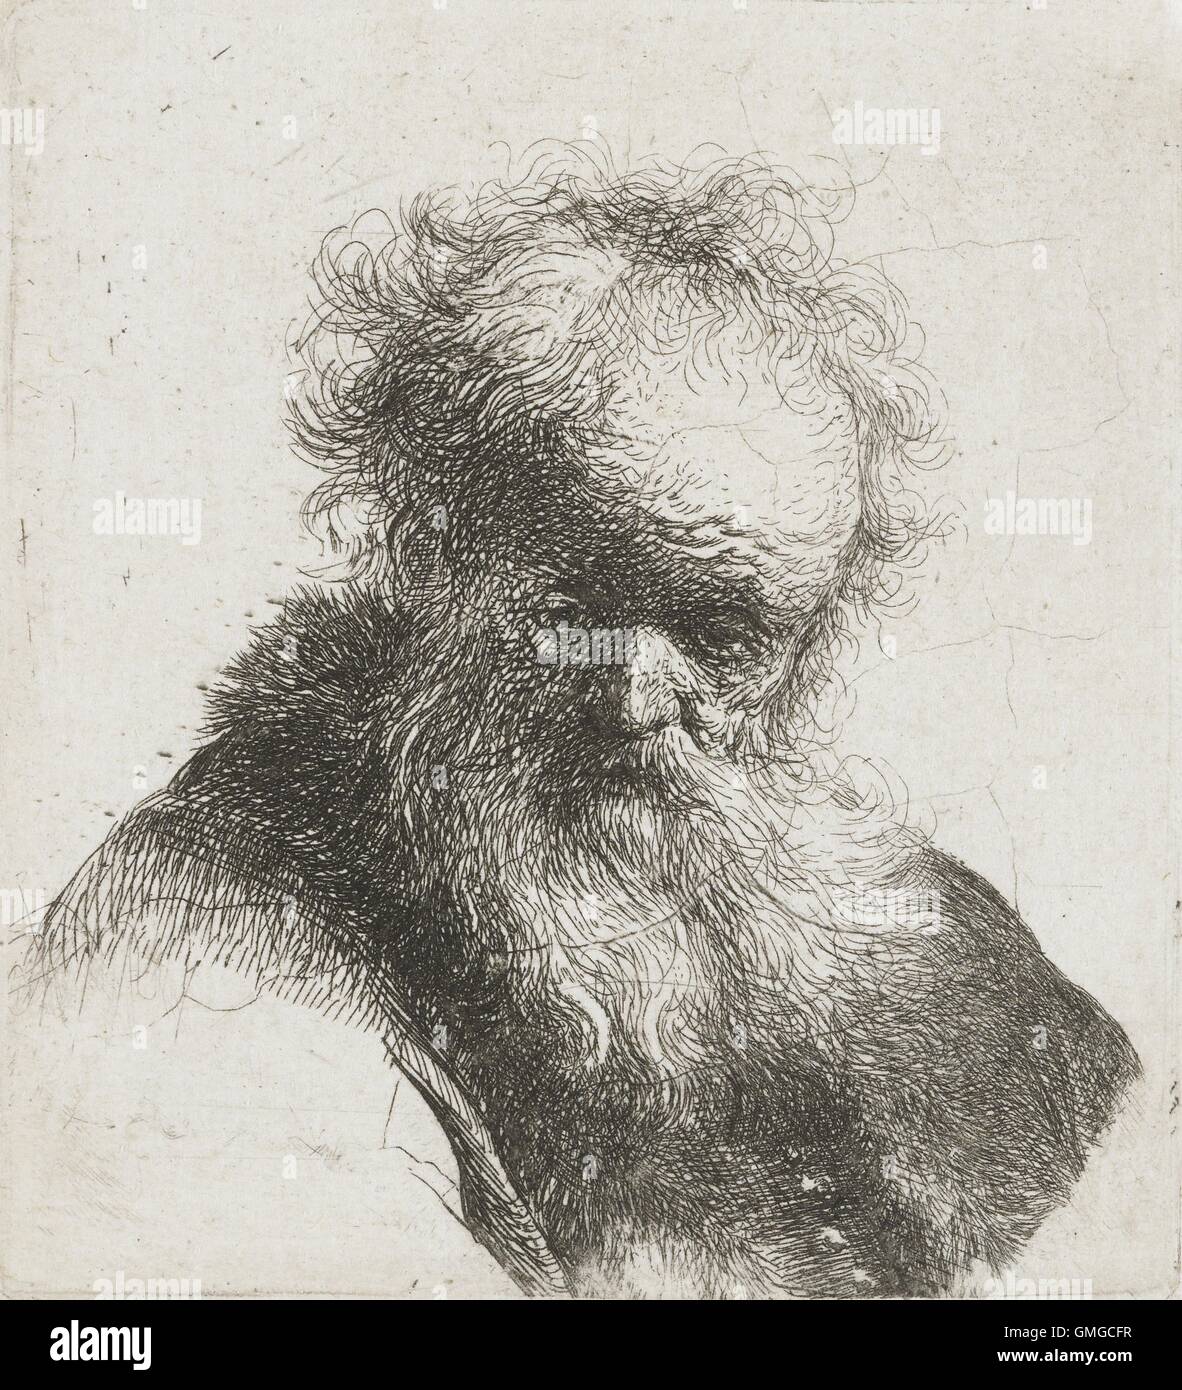 Uomo vecchio con barba lunga e camicia bianca manicotto, da Rembrandt van Rijn, 1630-34, stampa olandese, incisione su carta (BSLOC 2016 3 28) Foto Stock